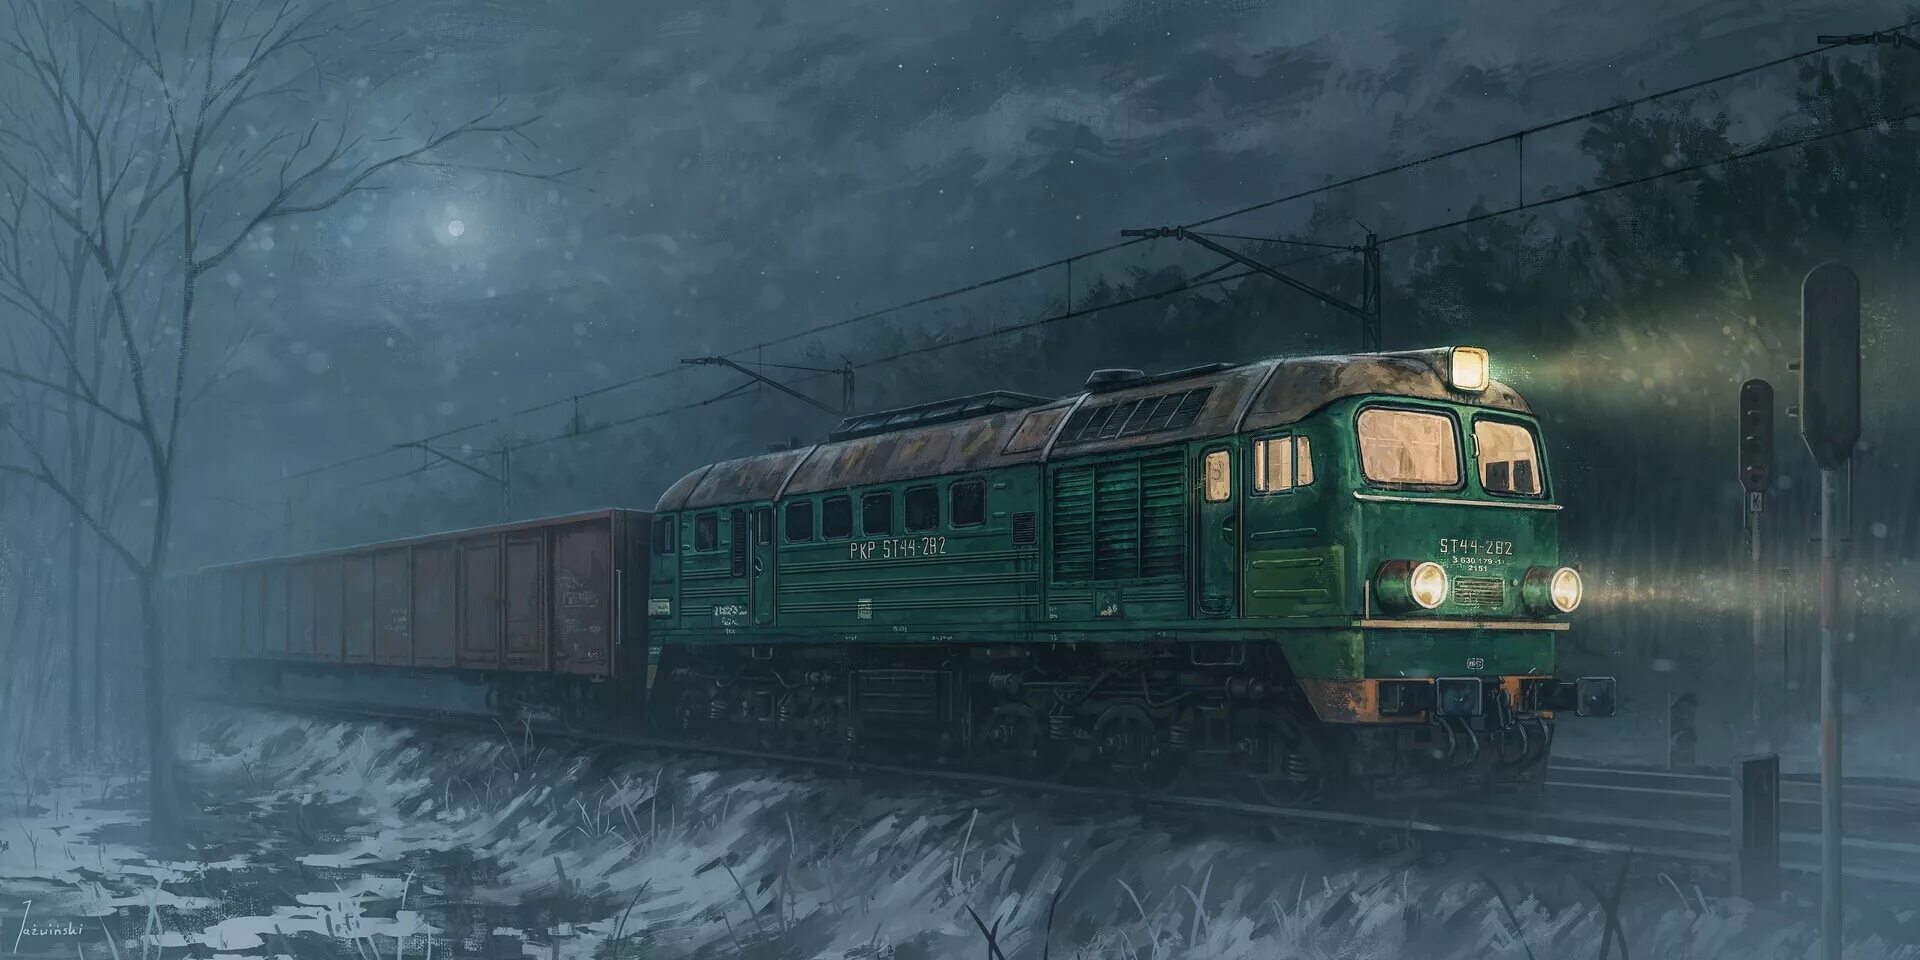 Поезд призрак СССР эр2 901. Поезда призраки вл80. Поезд арт. Звук приближающегося поезда